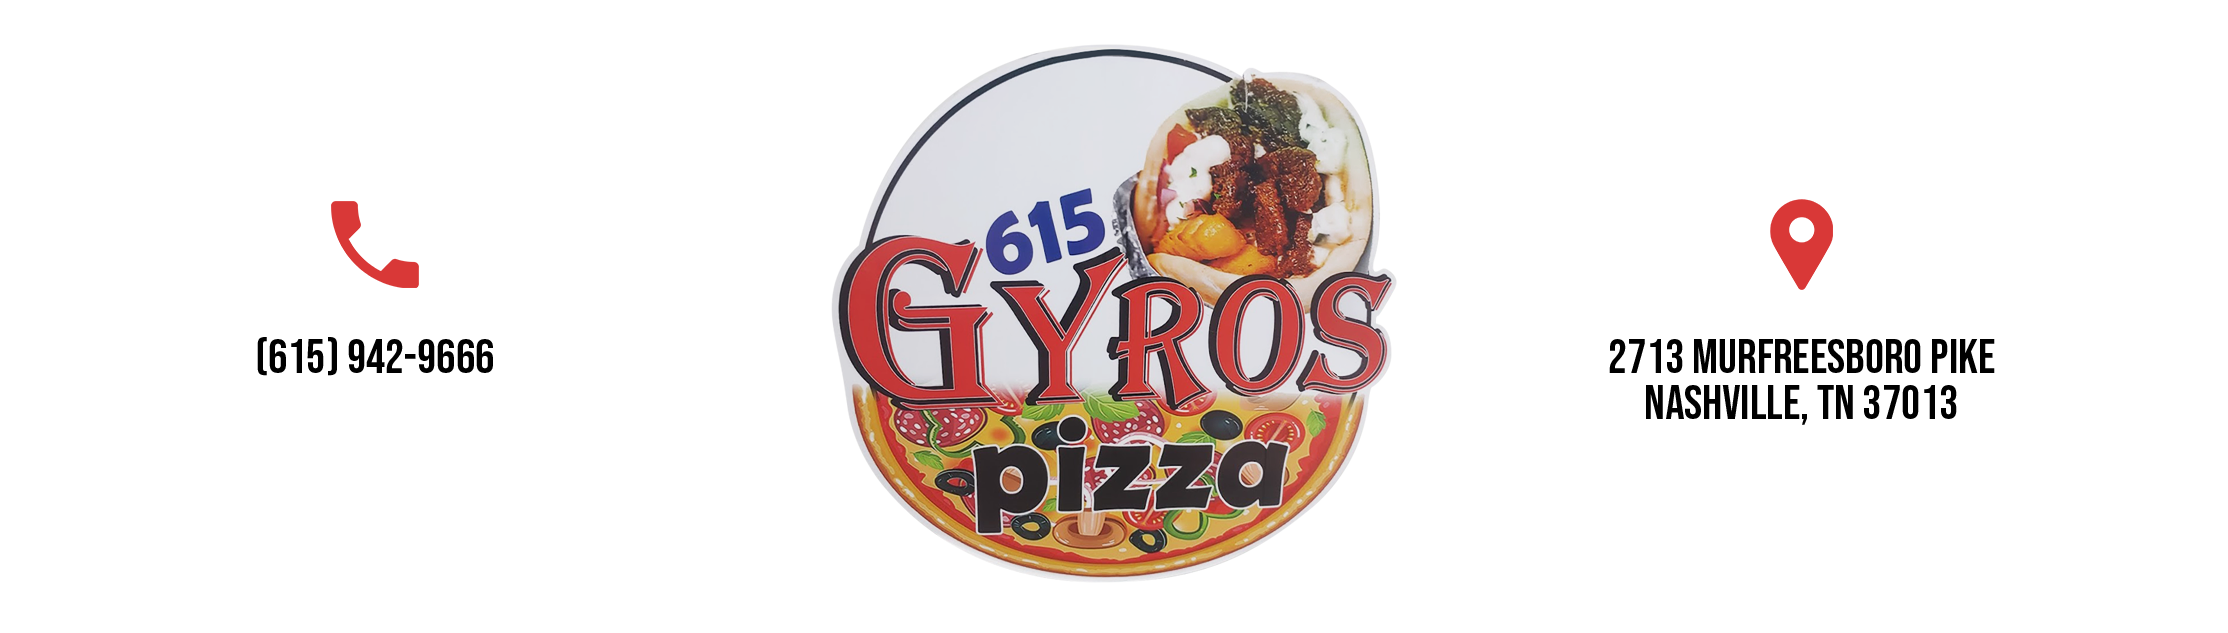 615 Gyros Pizza